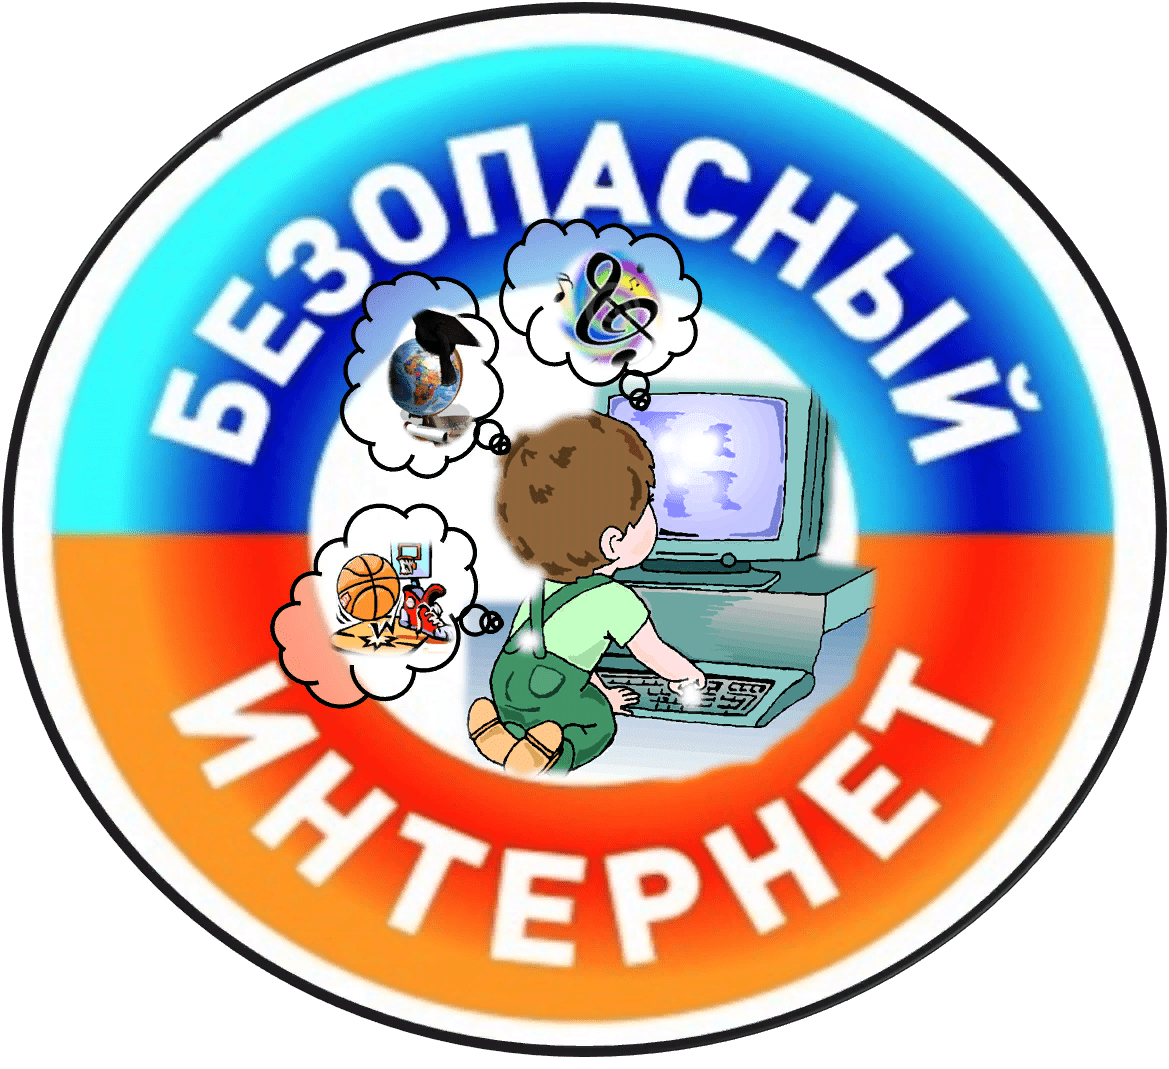  http://security.mosmetod.ru/novosti/103-prilozhenie-1-pamyatka-dlya-obuchayushchikhsya-ob-informatsionnoj-bezopasnosti-detej